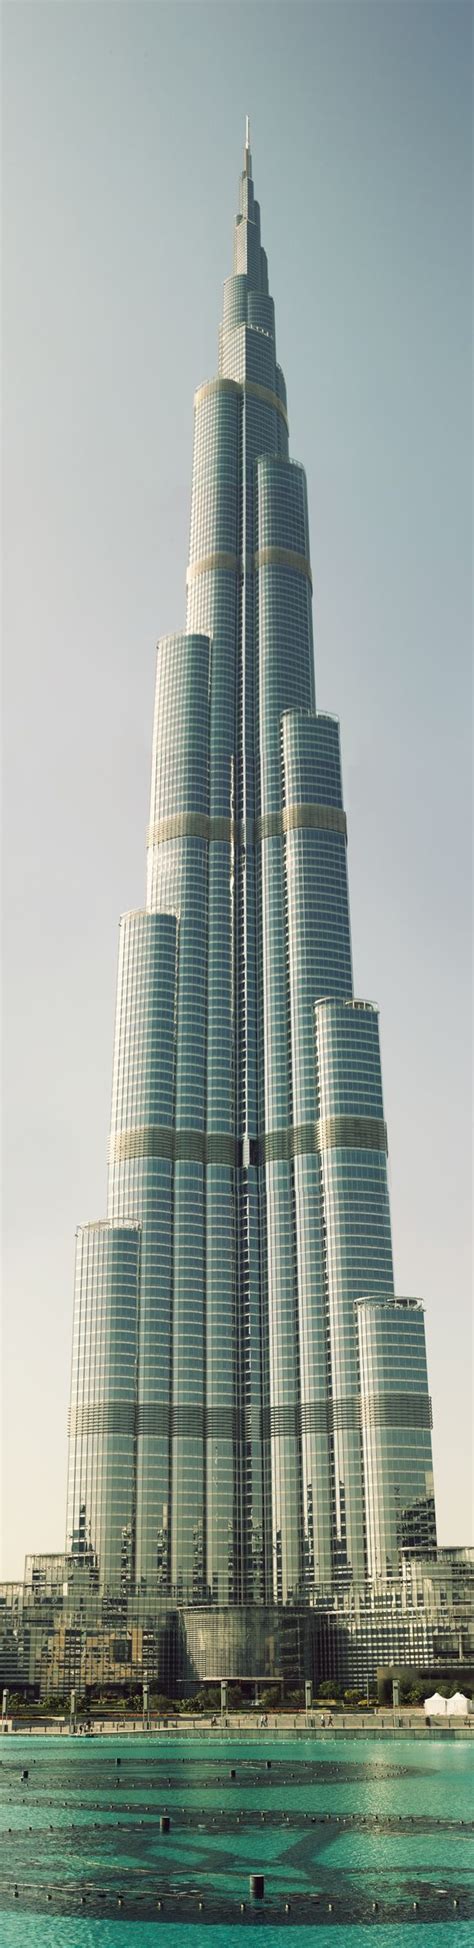 vrij zwaar gebouw hoogste gebouw ter wereld gemaakt van glas en metaal architecture cool